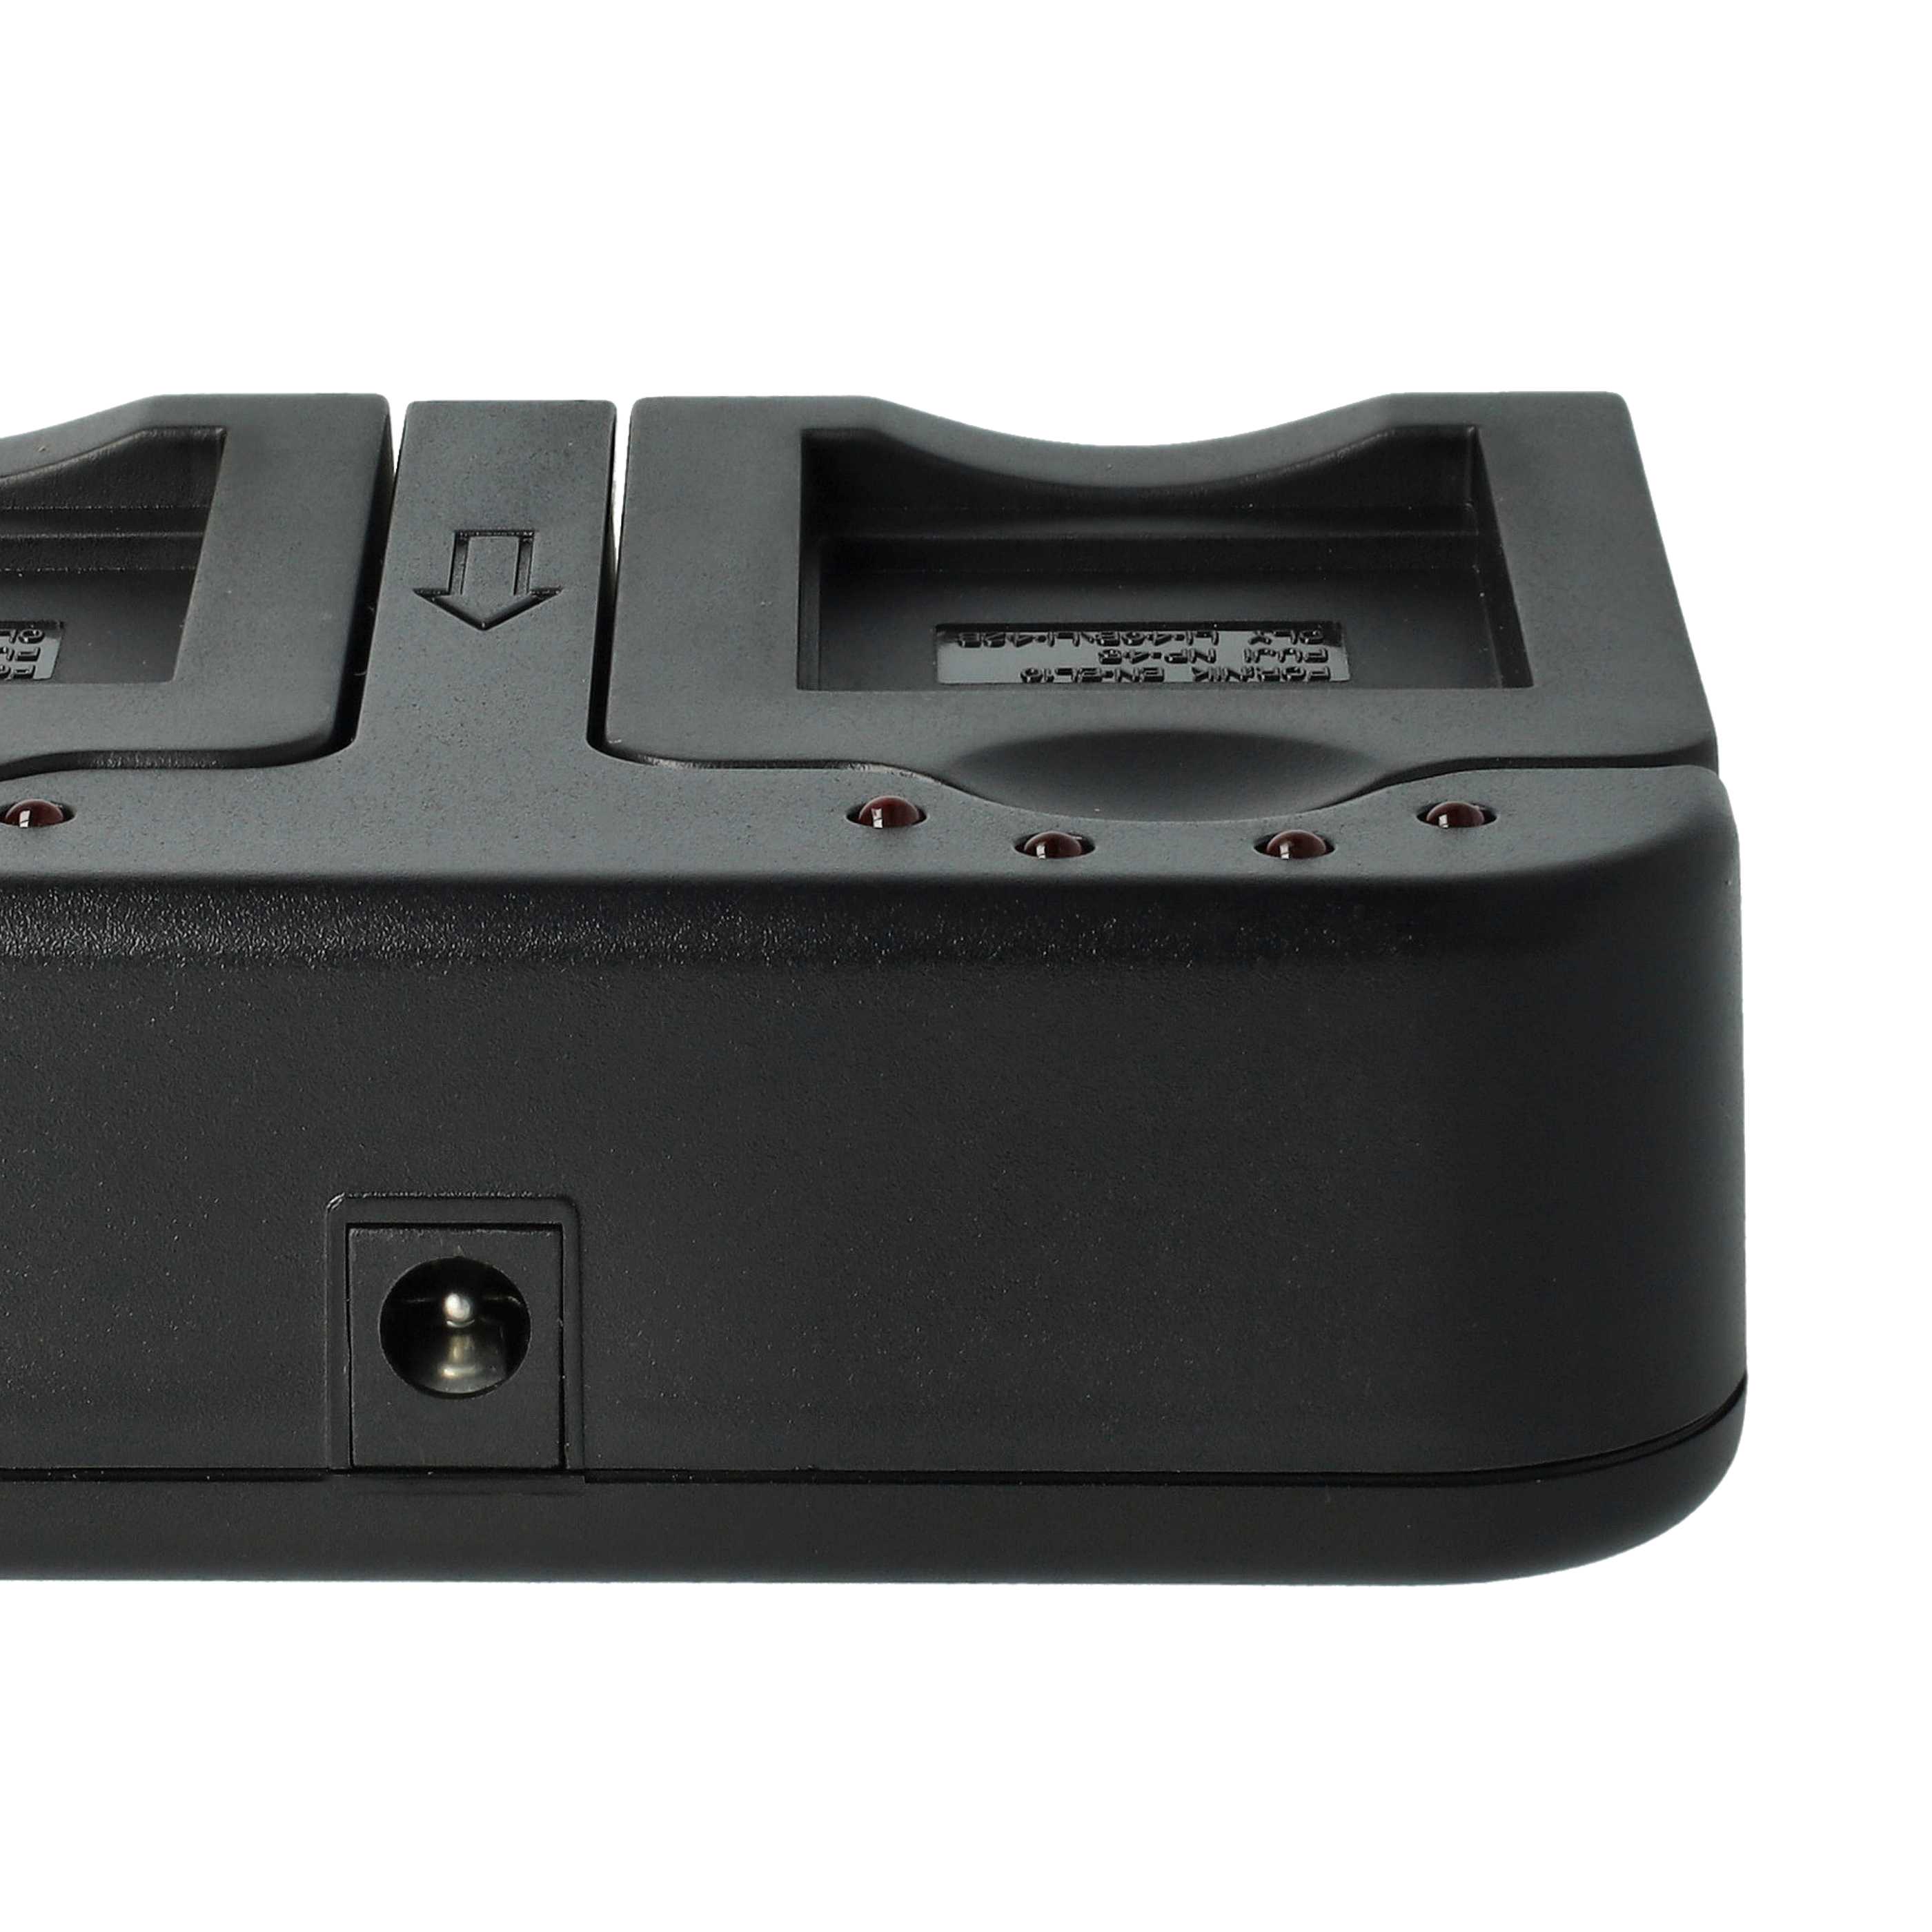 Cargador + adaptador de coche para cámara - 0.5 / 0.9A 4.2/8.4V 114,5cm